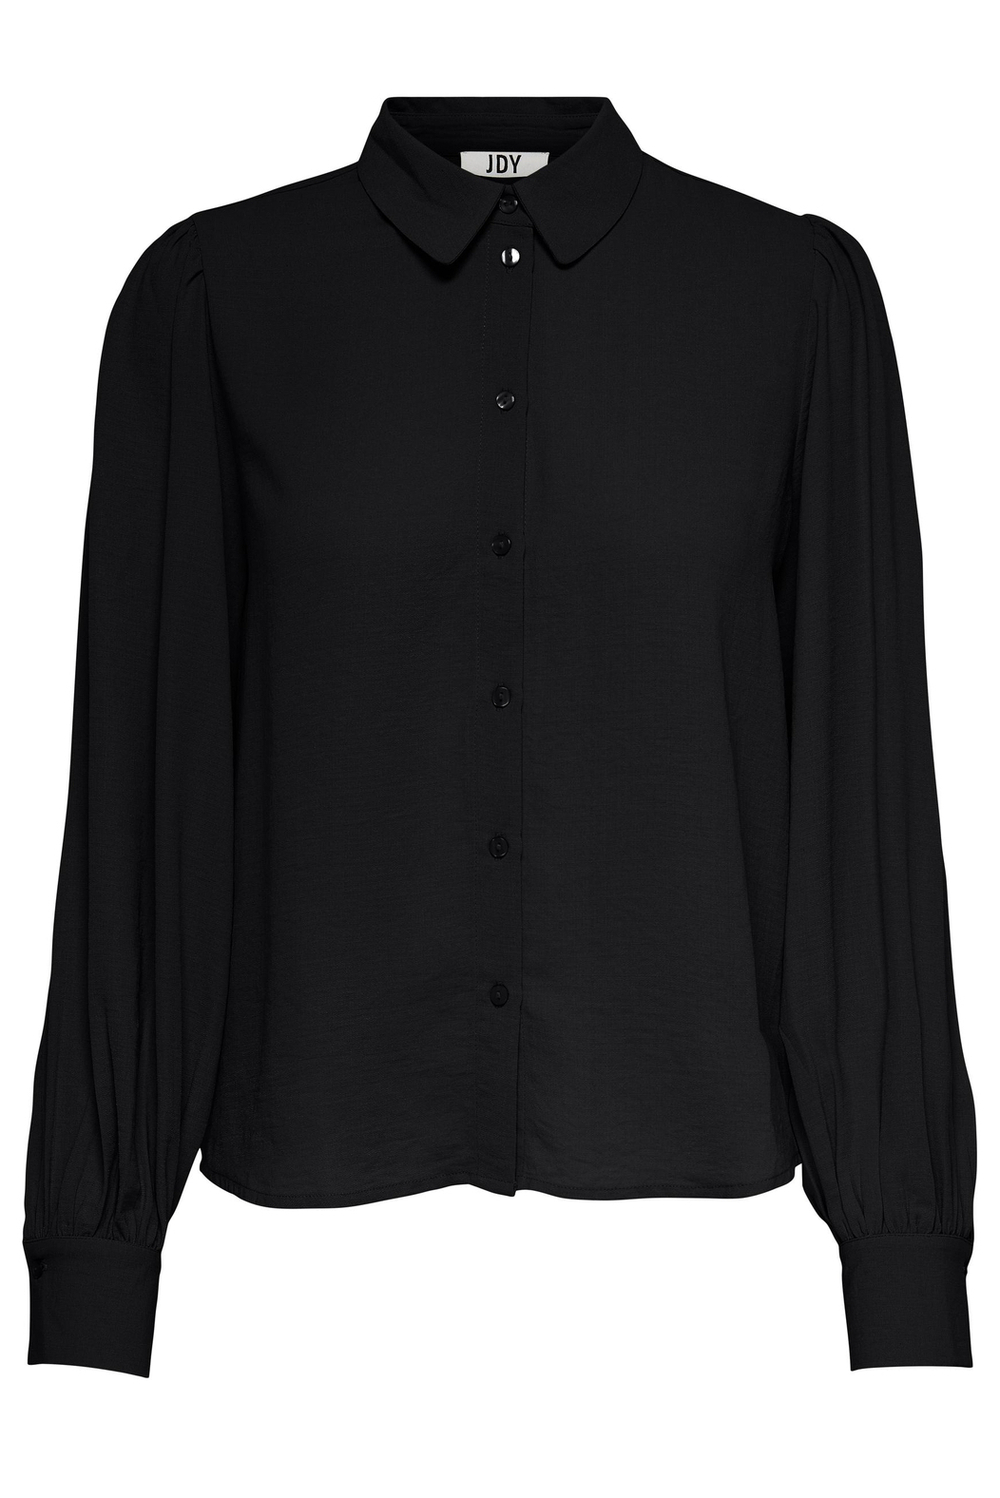 jdydivya l/s shirt wvn 15283183 jacqueline de yong blouse black